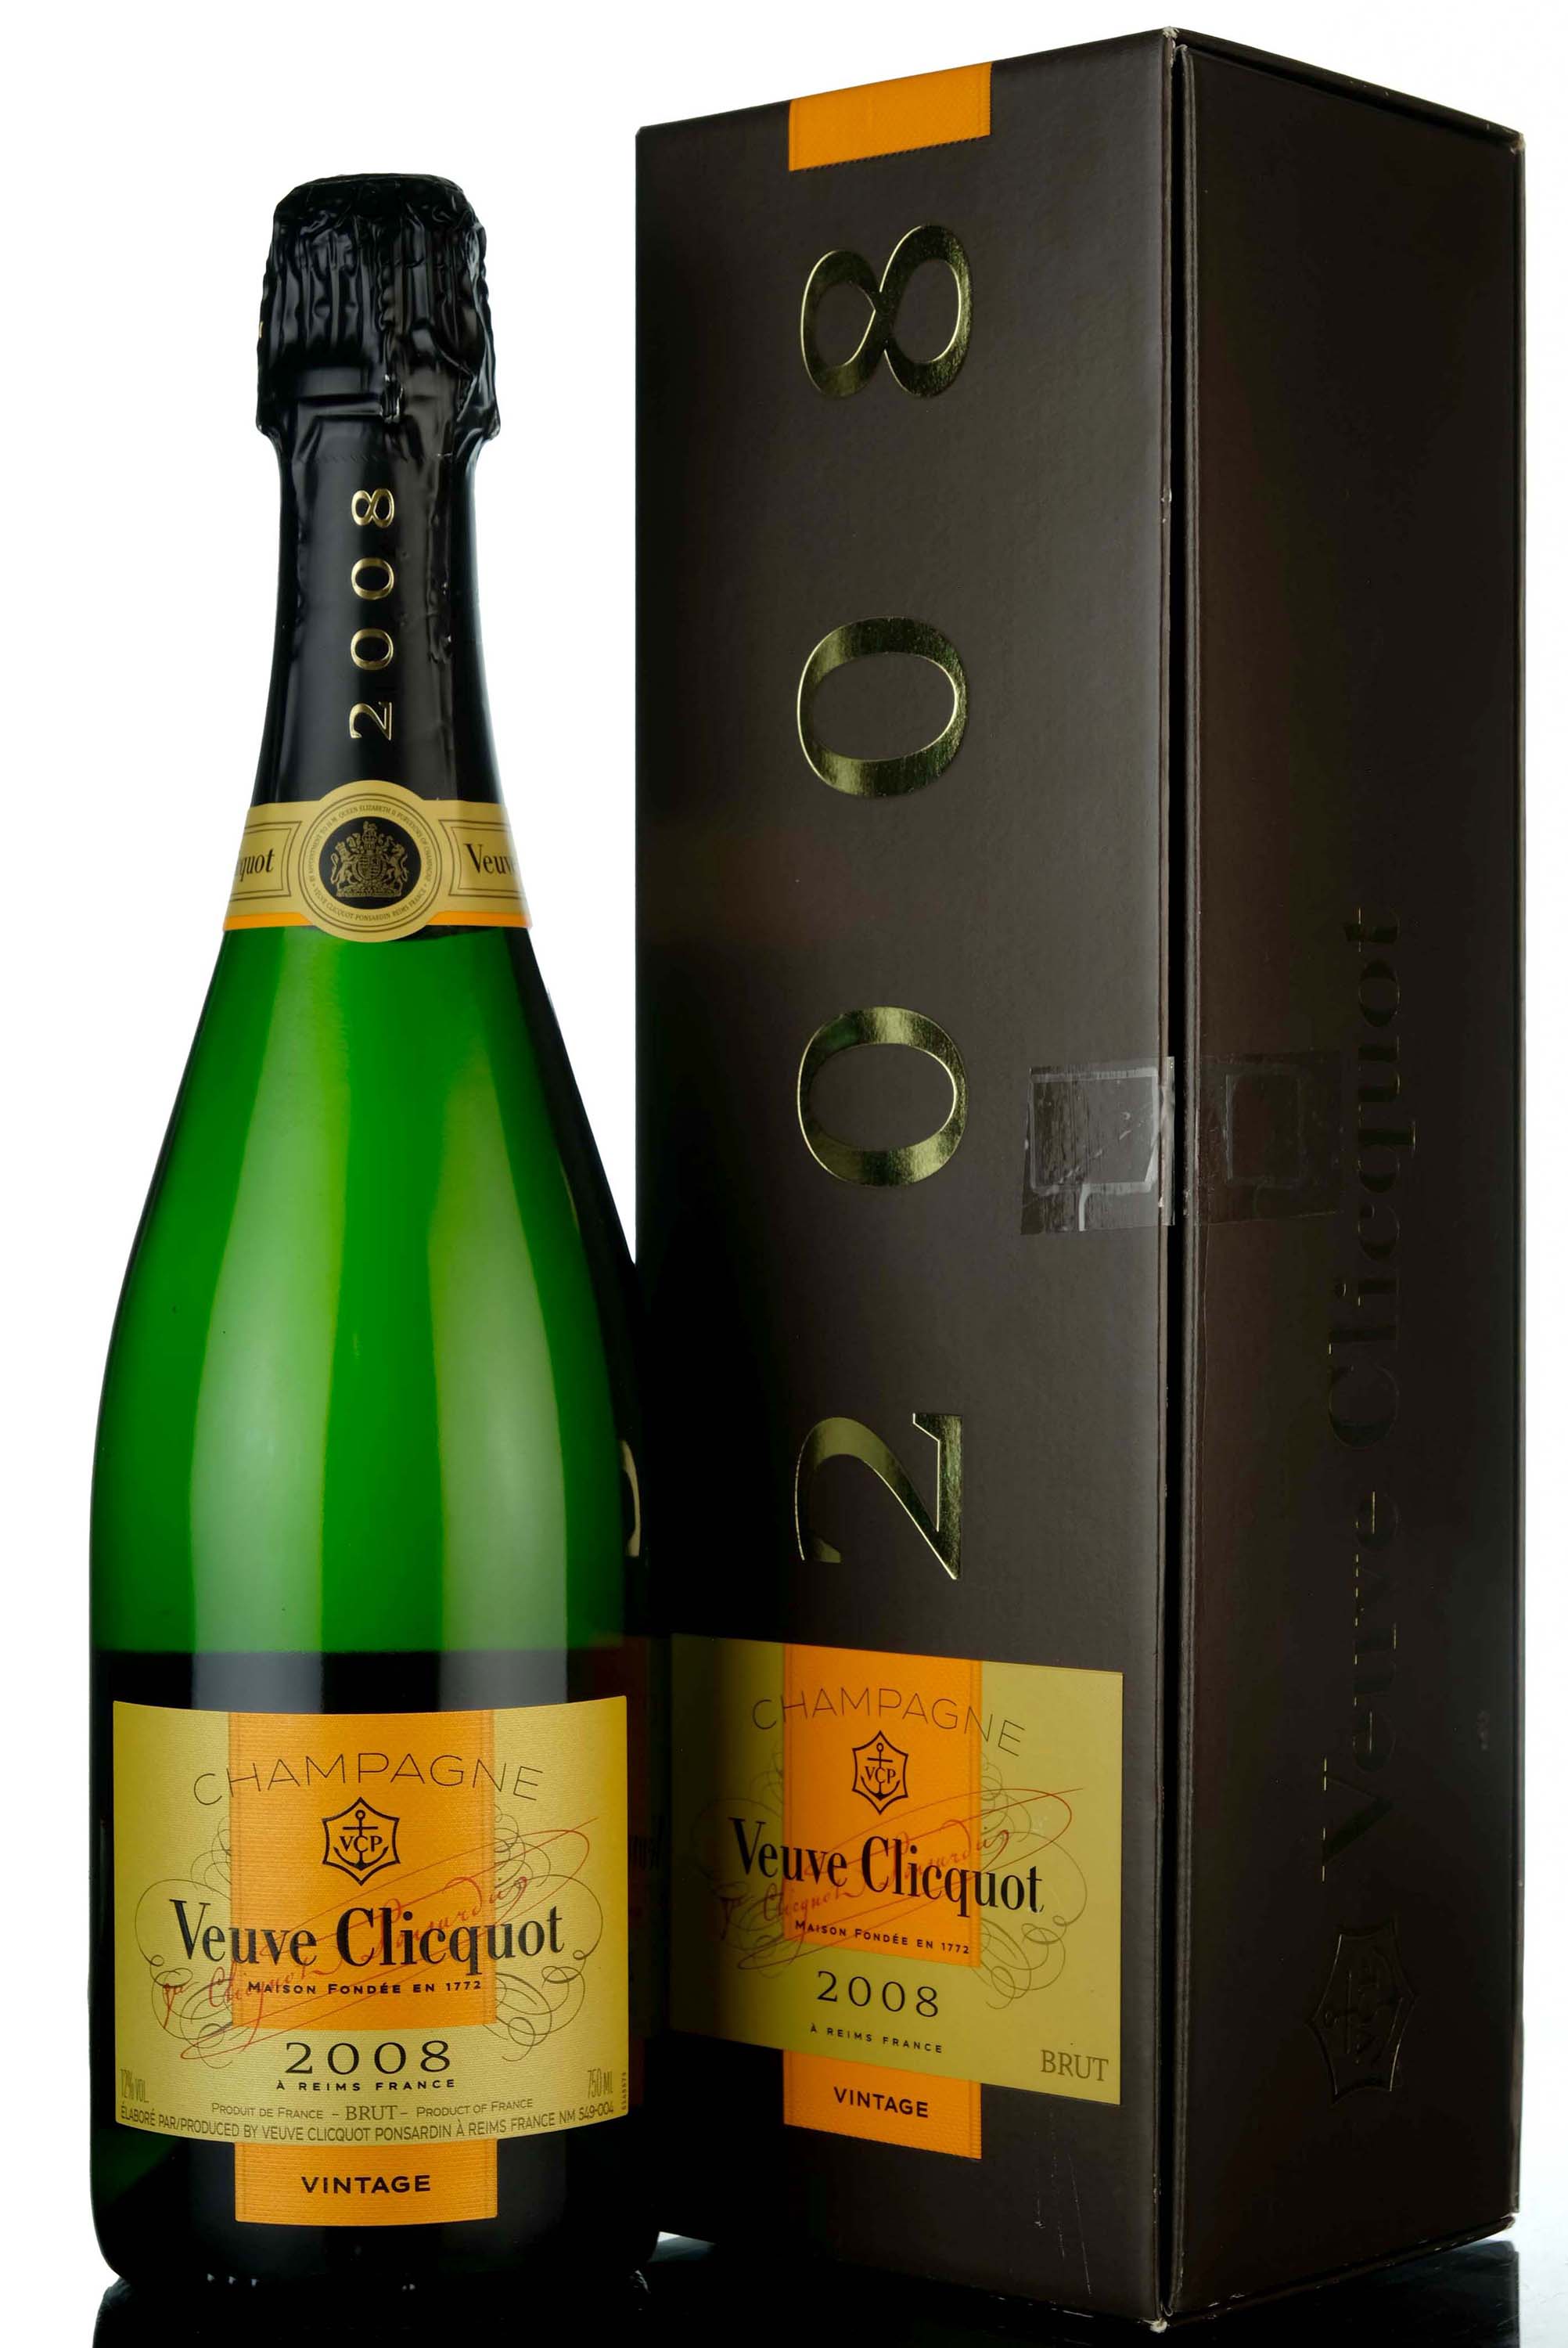 Veuve Clicquot 2008 Vintage Champagne